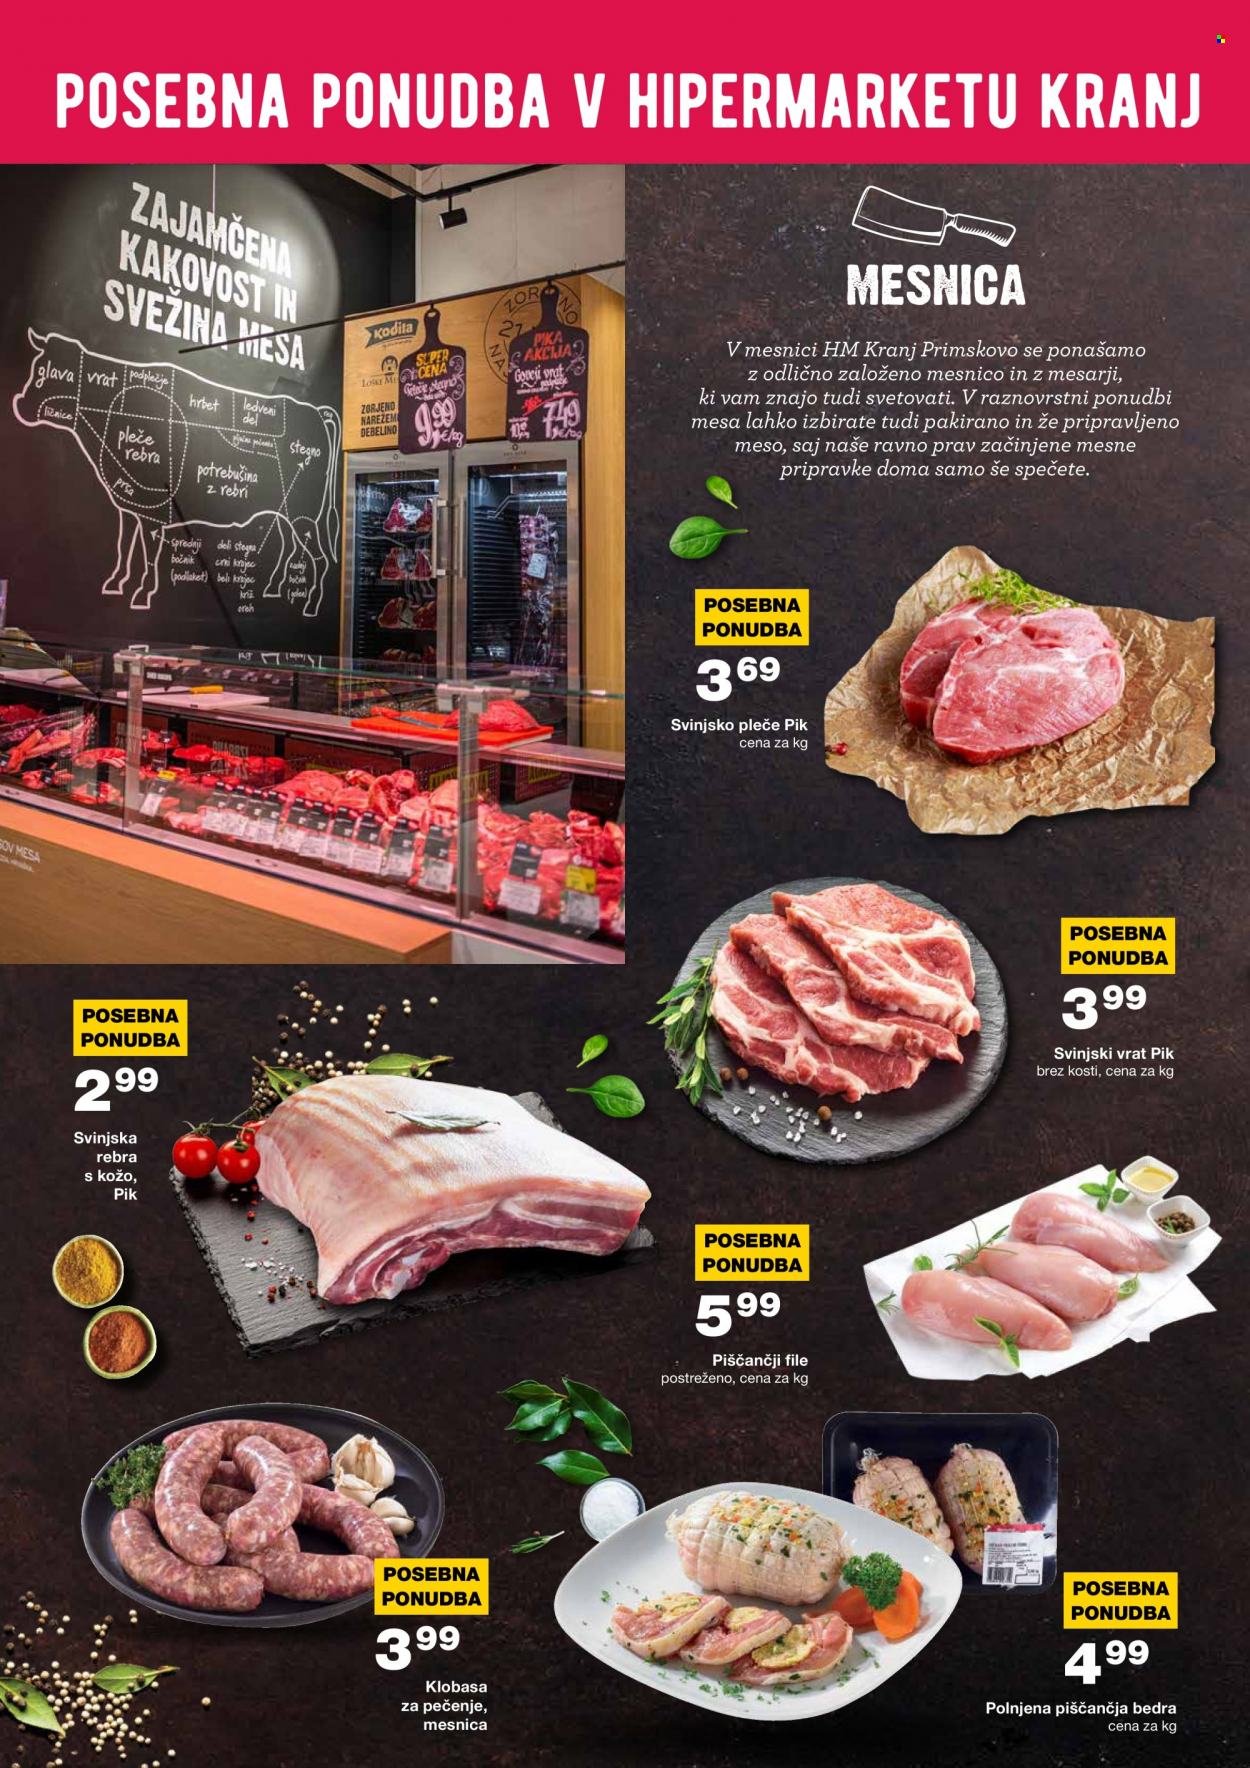 thumbnail - Mercator katalog - 13.9.2021 - 18.9.2021 - Ponudba izdelkov - piščančja bedra, piščančji file, stegno, piščančje meso, pleče, rebra, svinjska rebra, svinjski vrat, svinjsko pleče, svinjsko meso, klobasa. Stran 2.